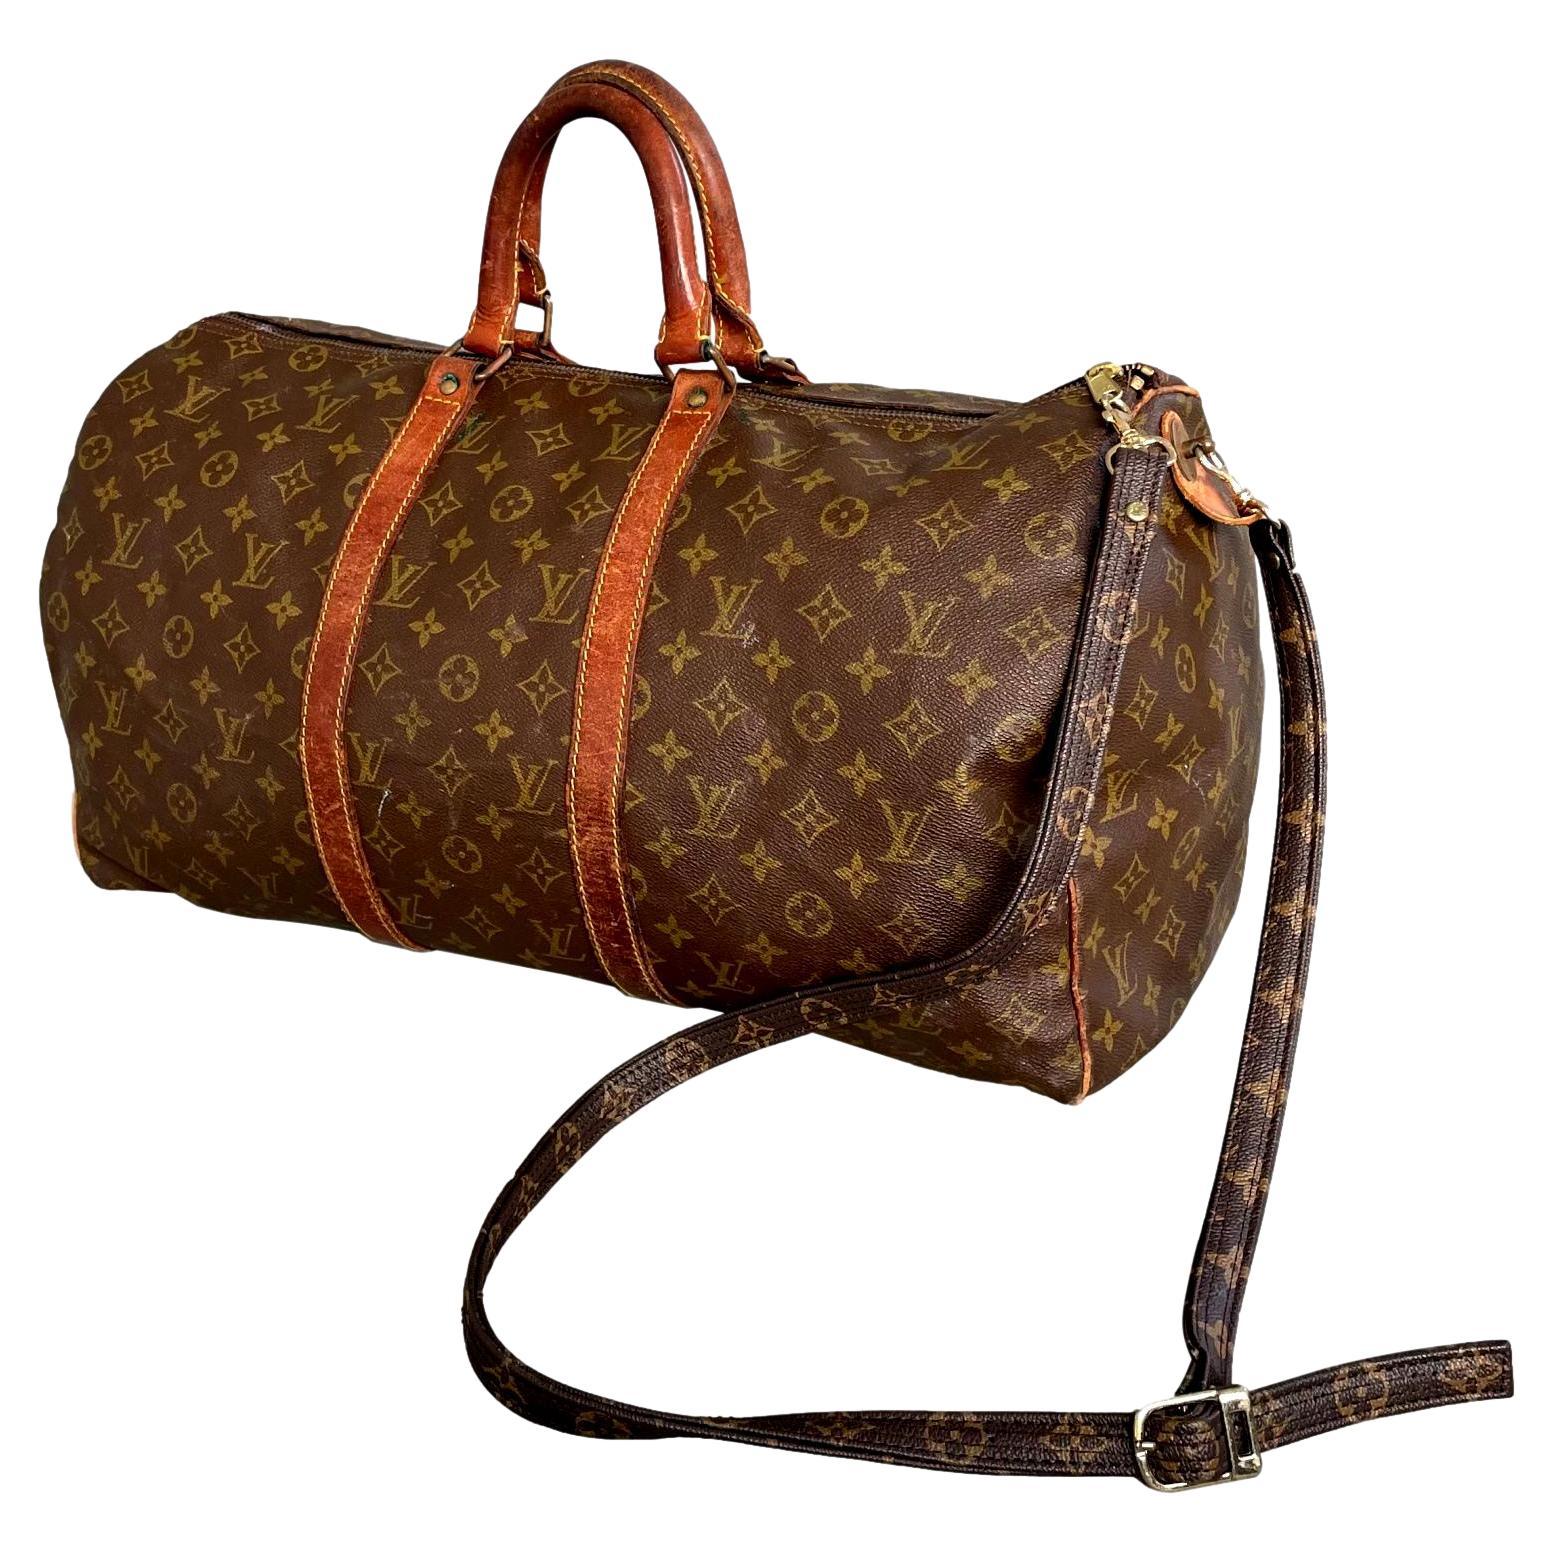 1950s Louis Vuitton 50 cm Duffel Bag For Sale